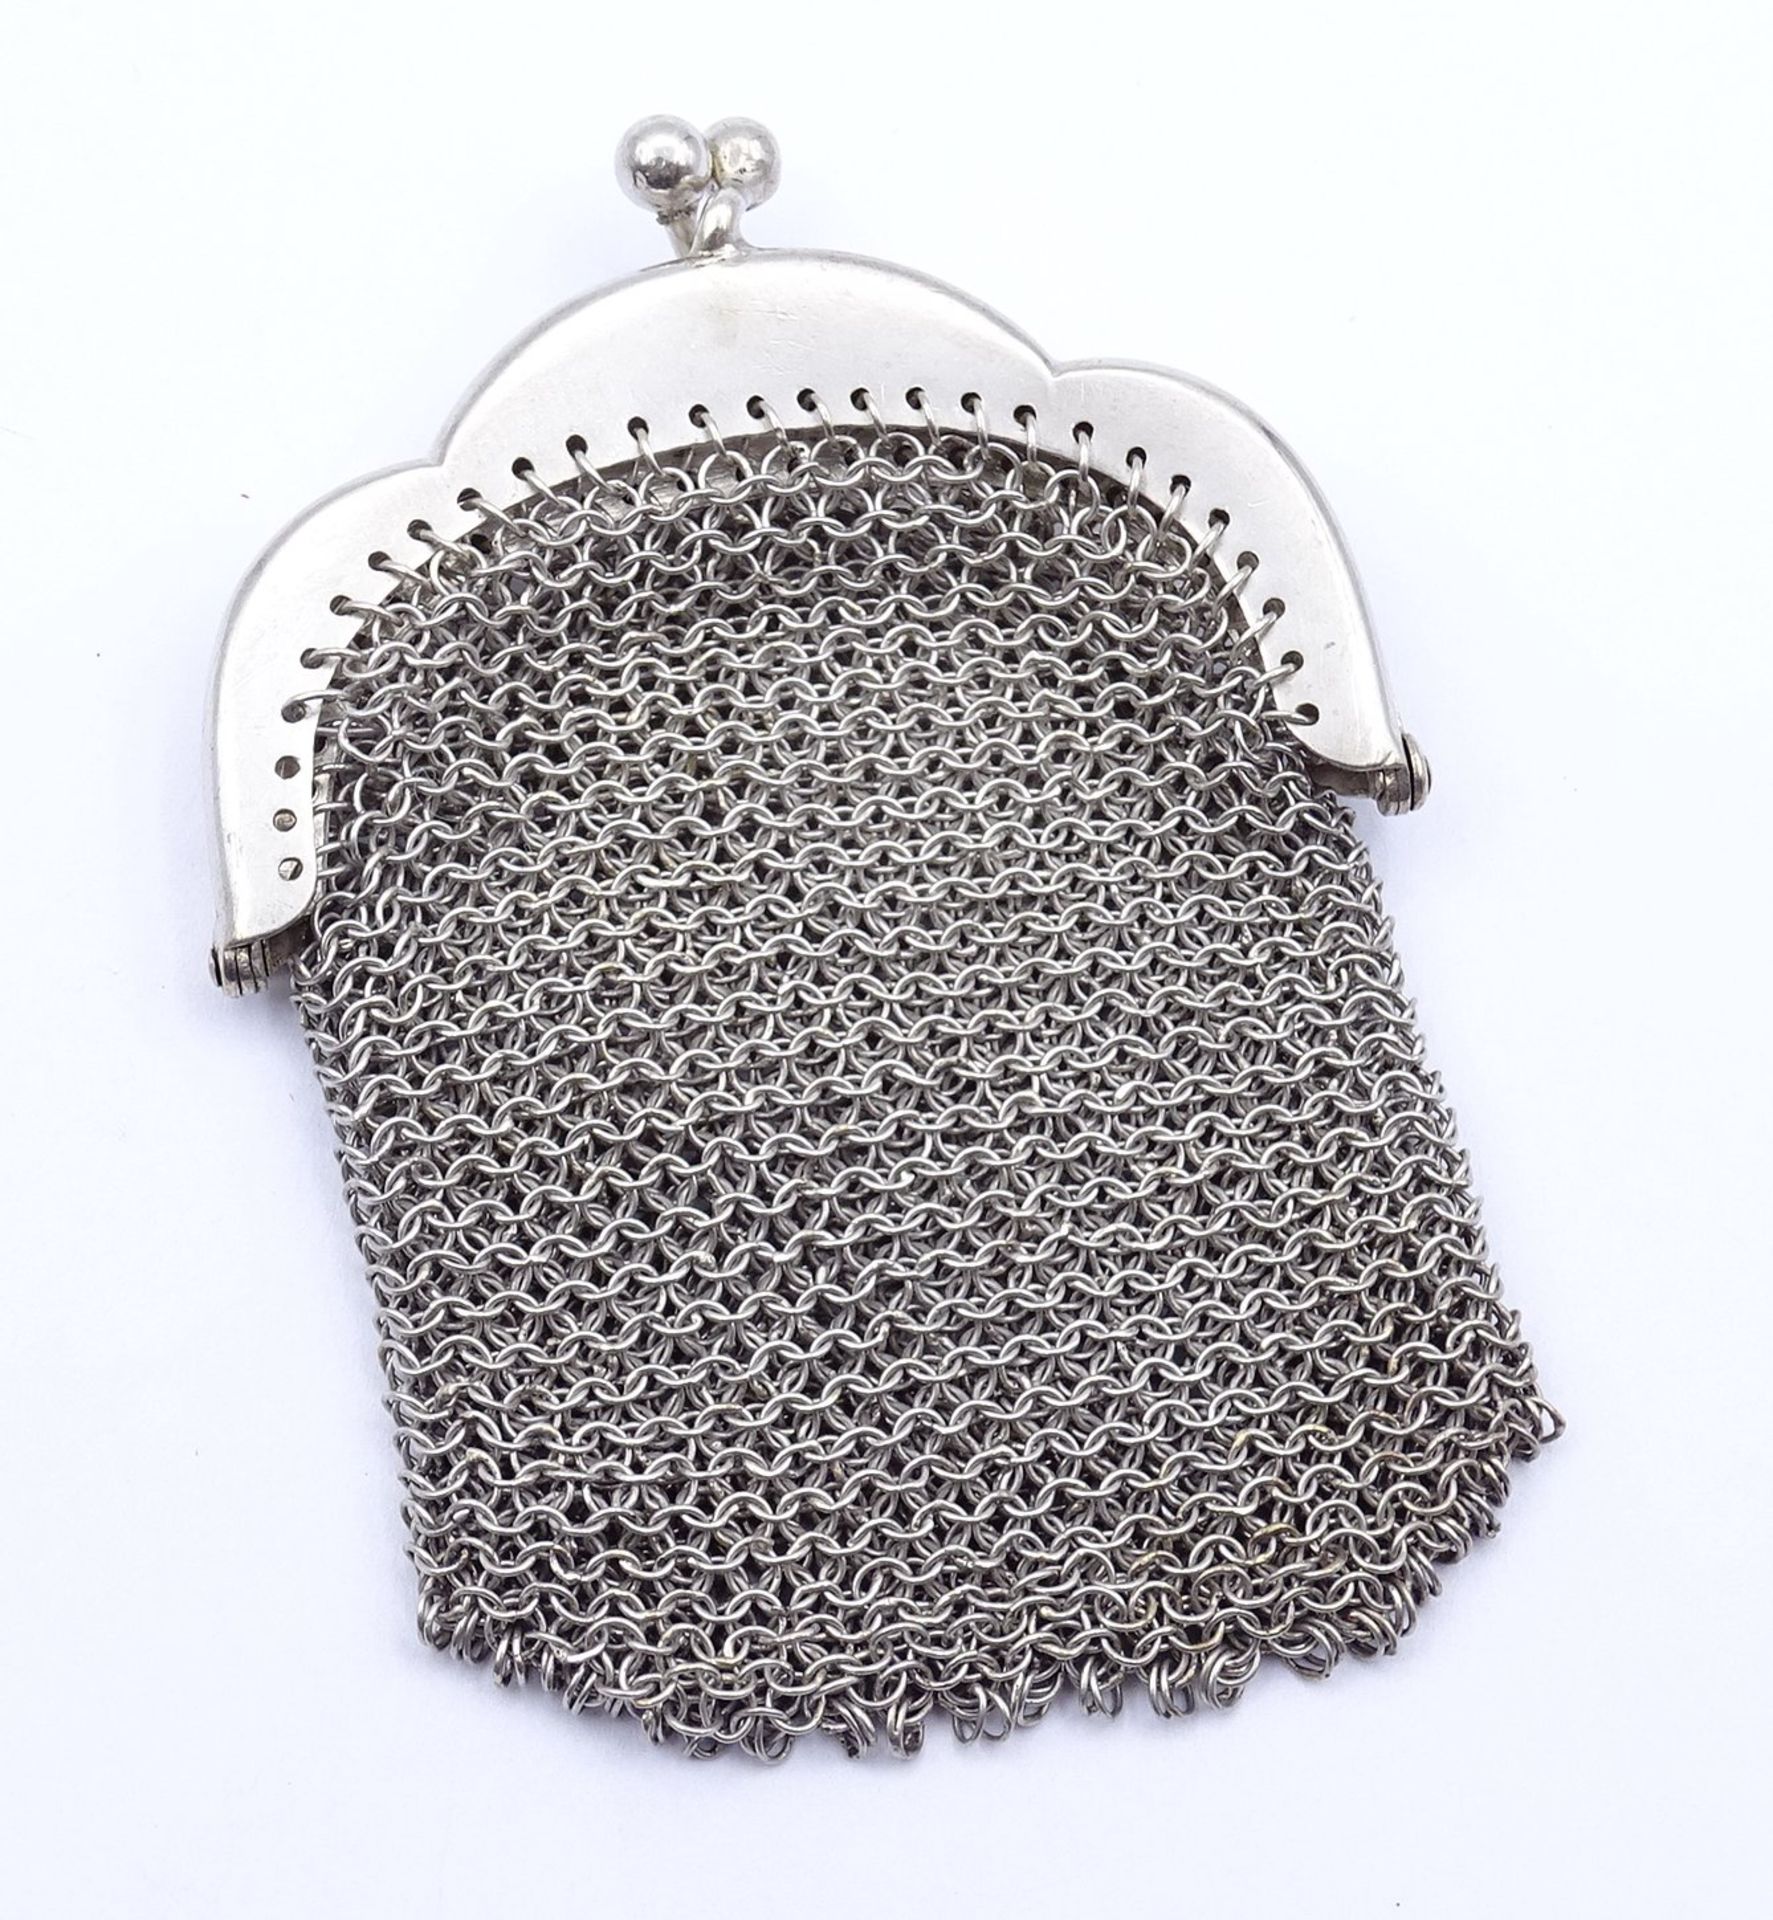 kl. Kettentasche aus Silber 0.800, 29,2g., L. 6,8cm - Image 2 of 3